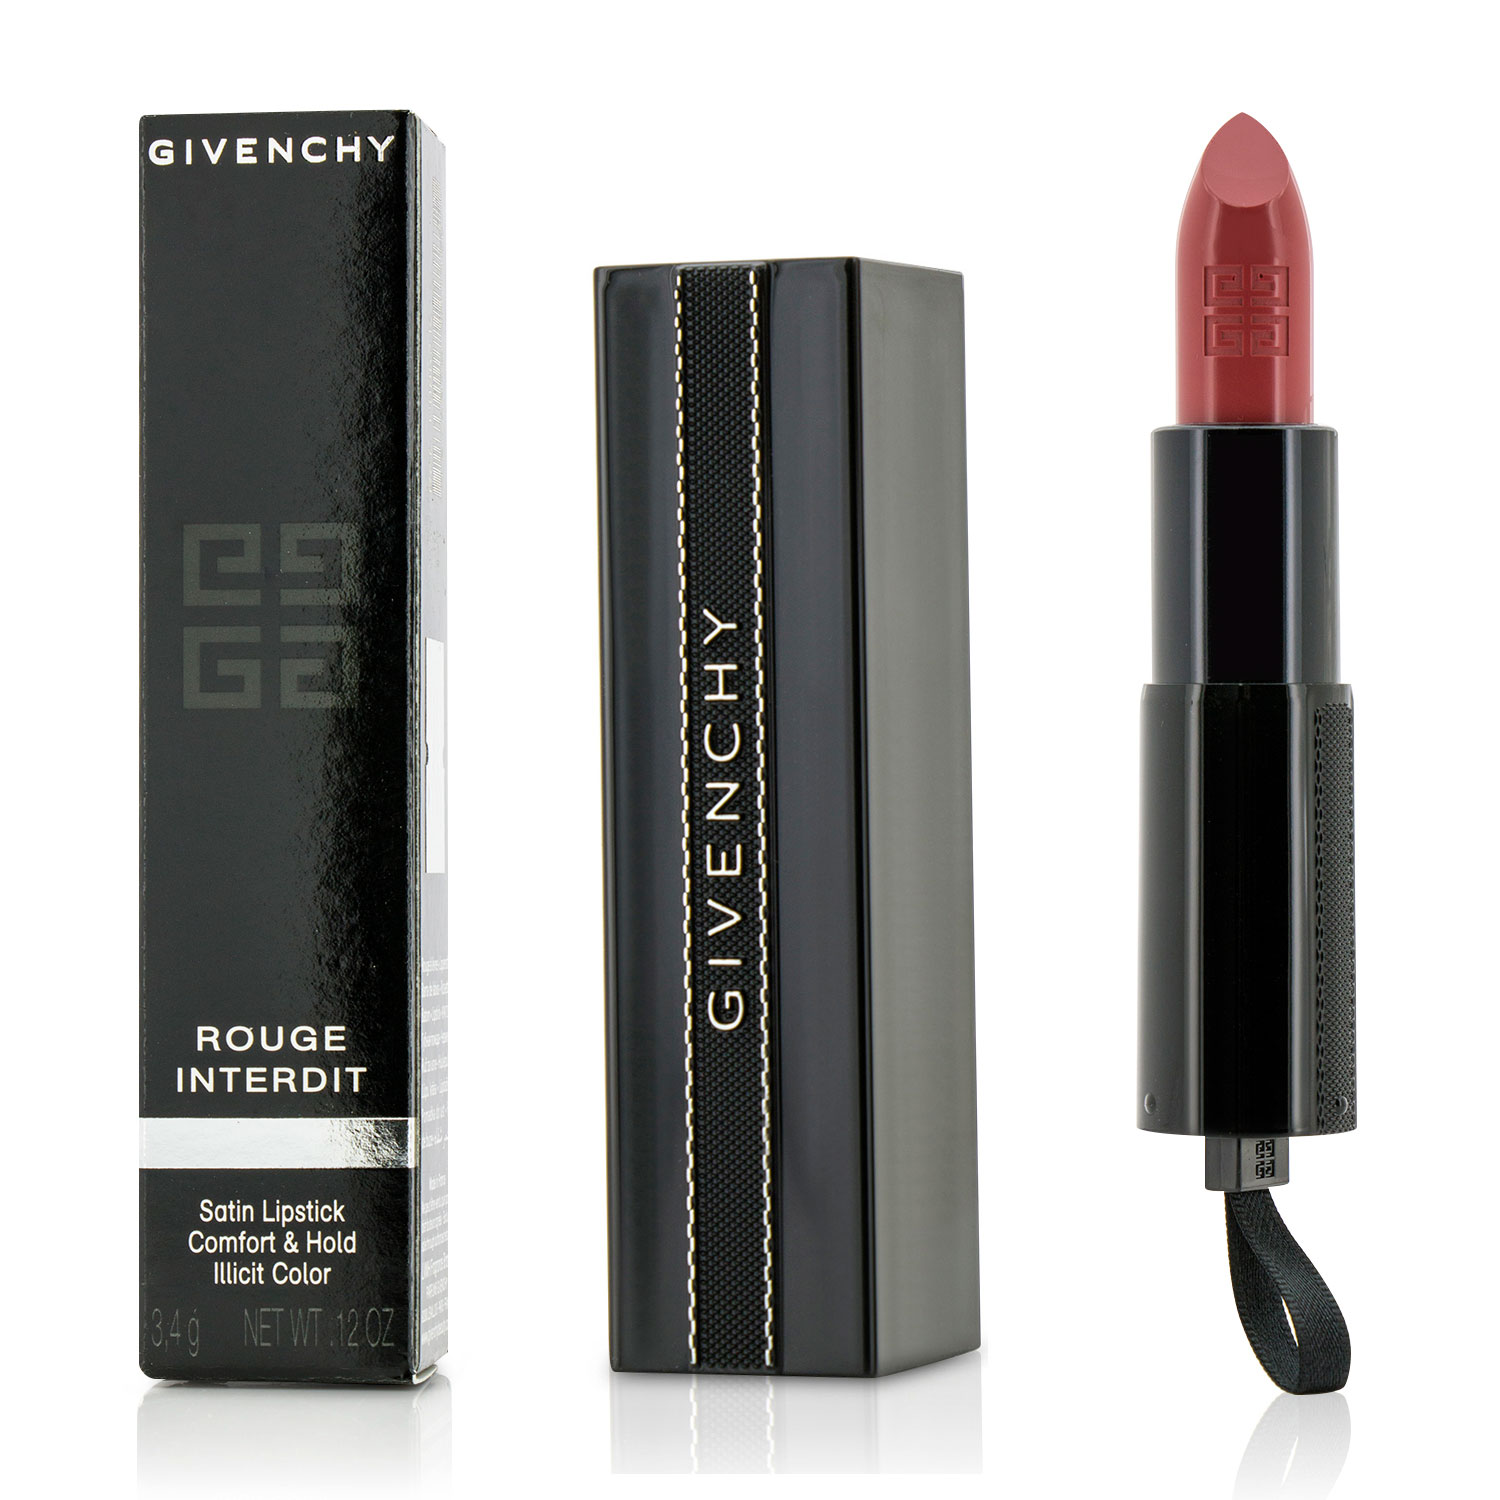 Rouge Interdit Satin Lipstick - # 9 Rose Alibi Givenchy Image